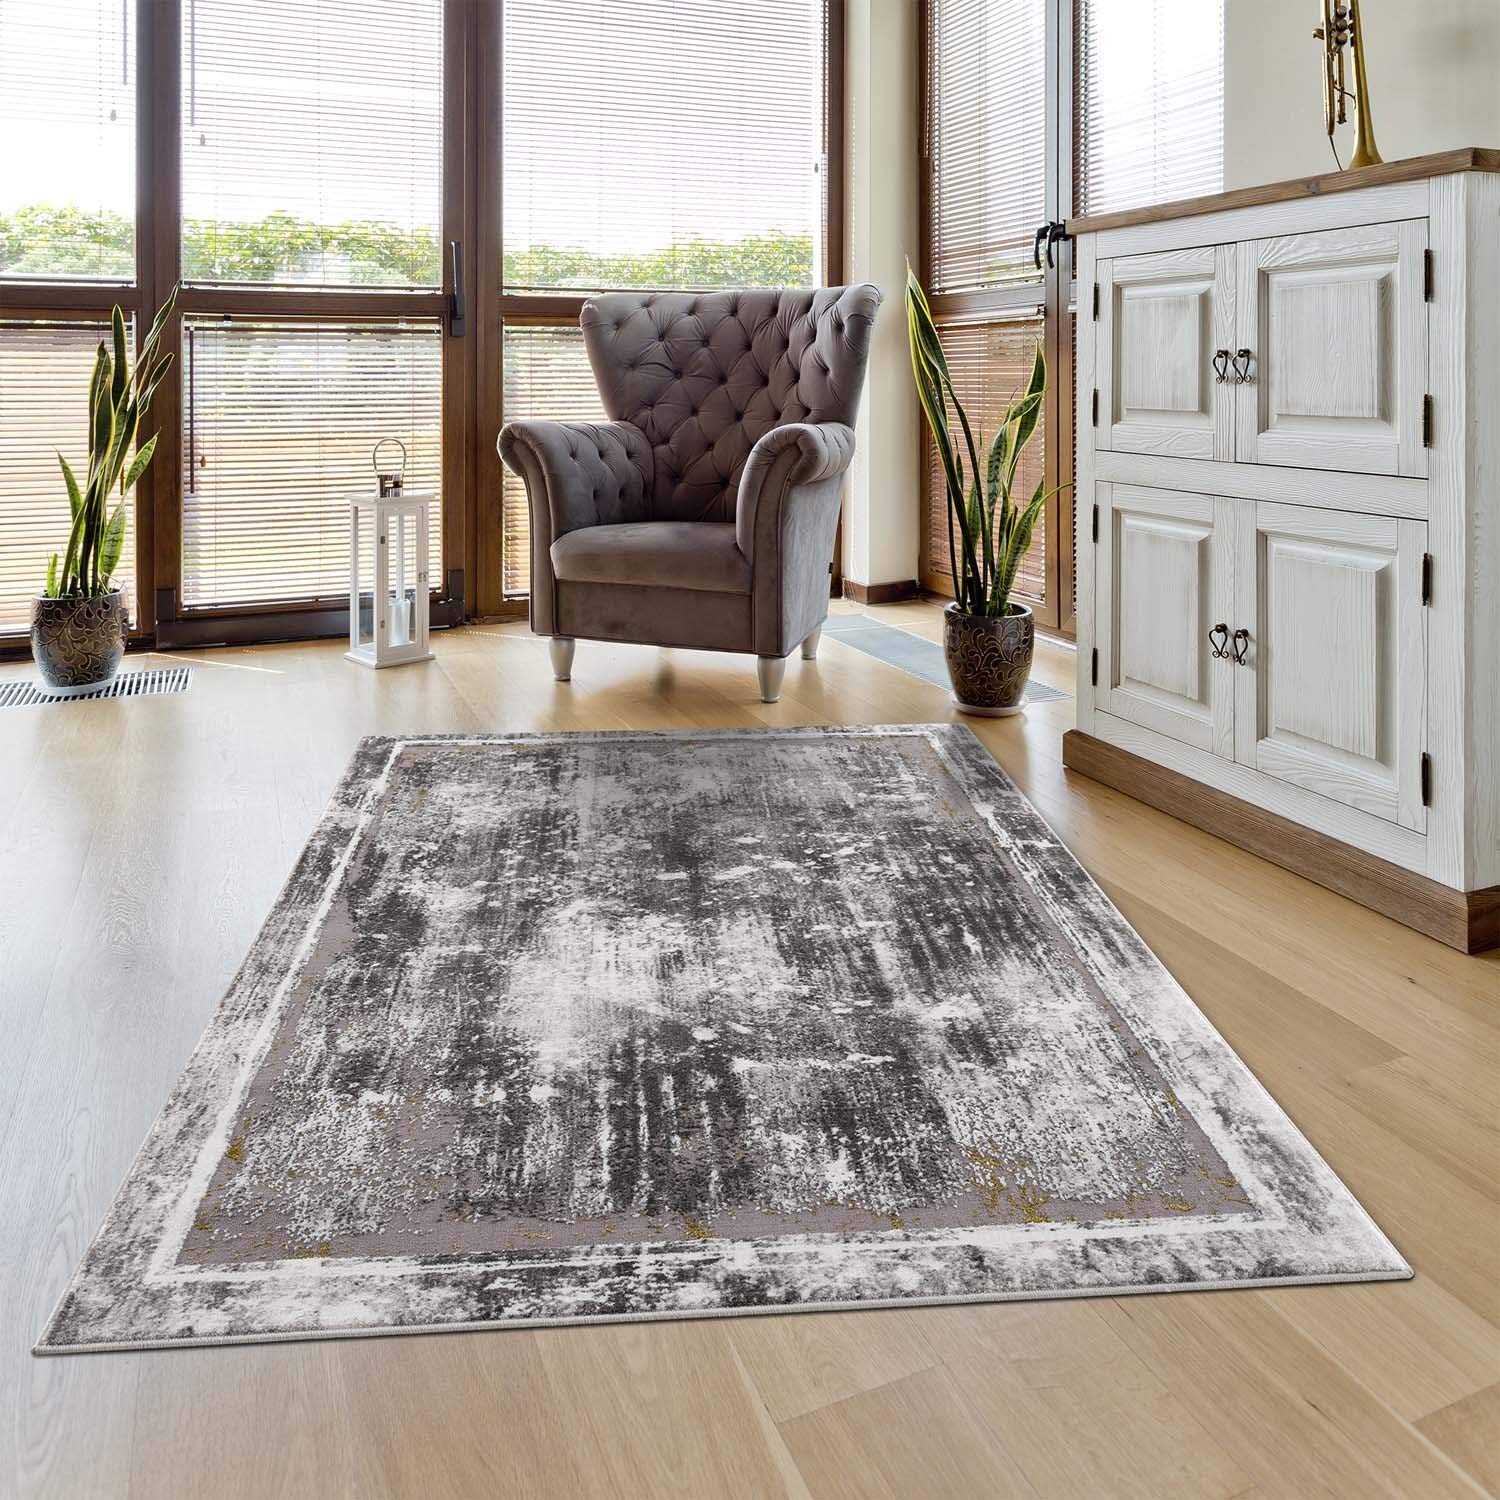 carpet city Teppich Bordüre Wohnzimmer - 80x150 cm Grau Meliert - Moderne Teppiche Kurzflor